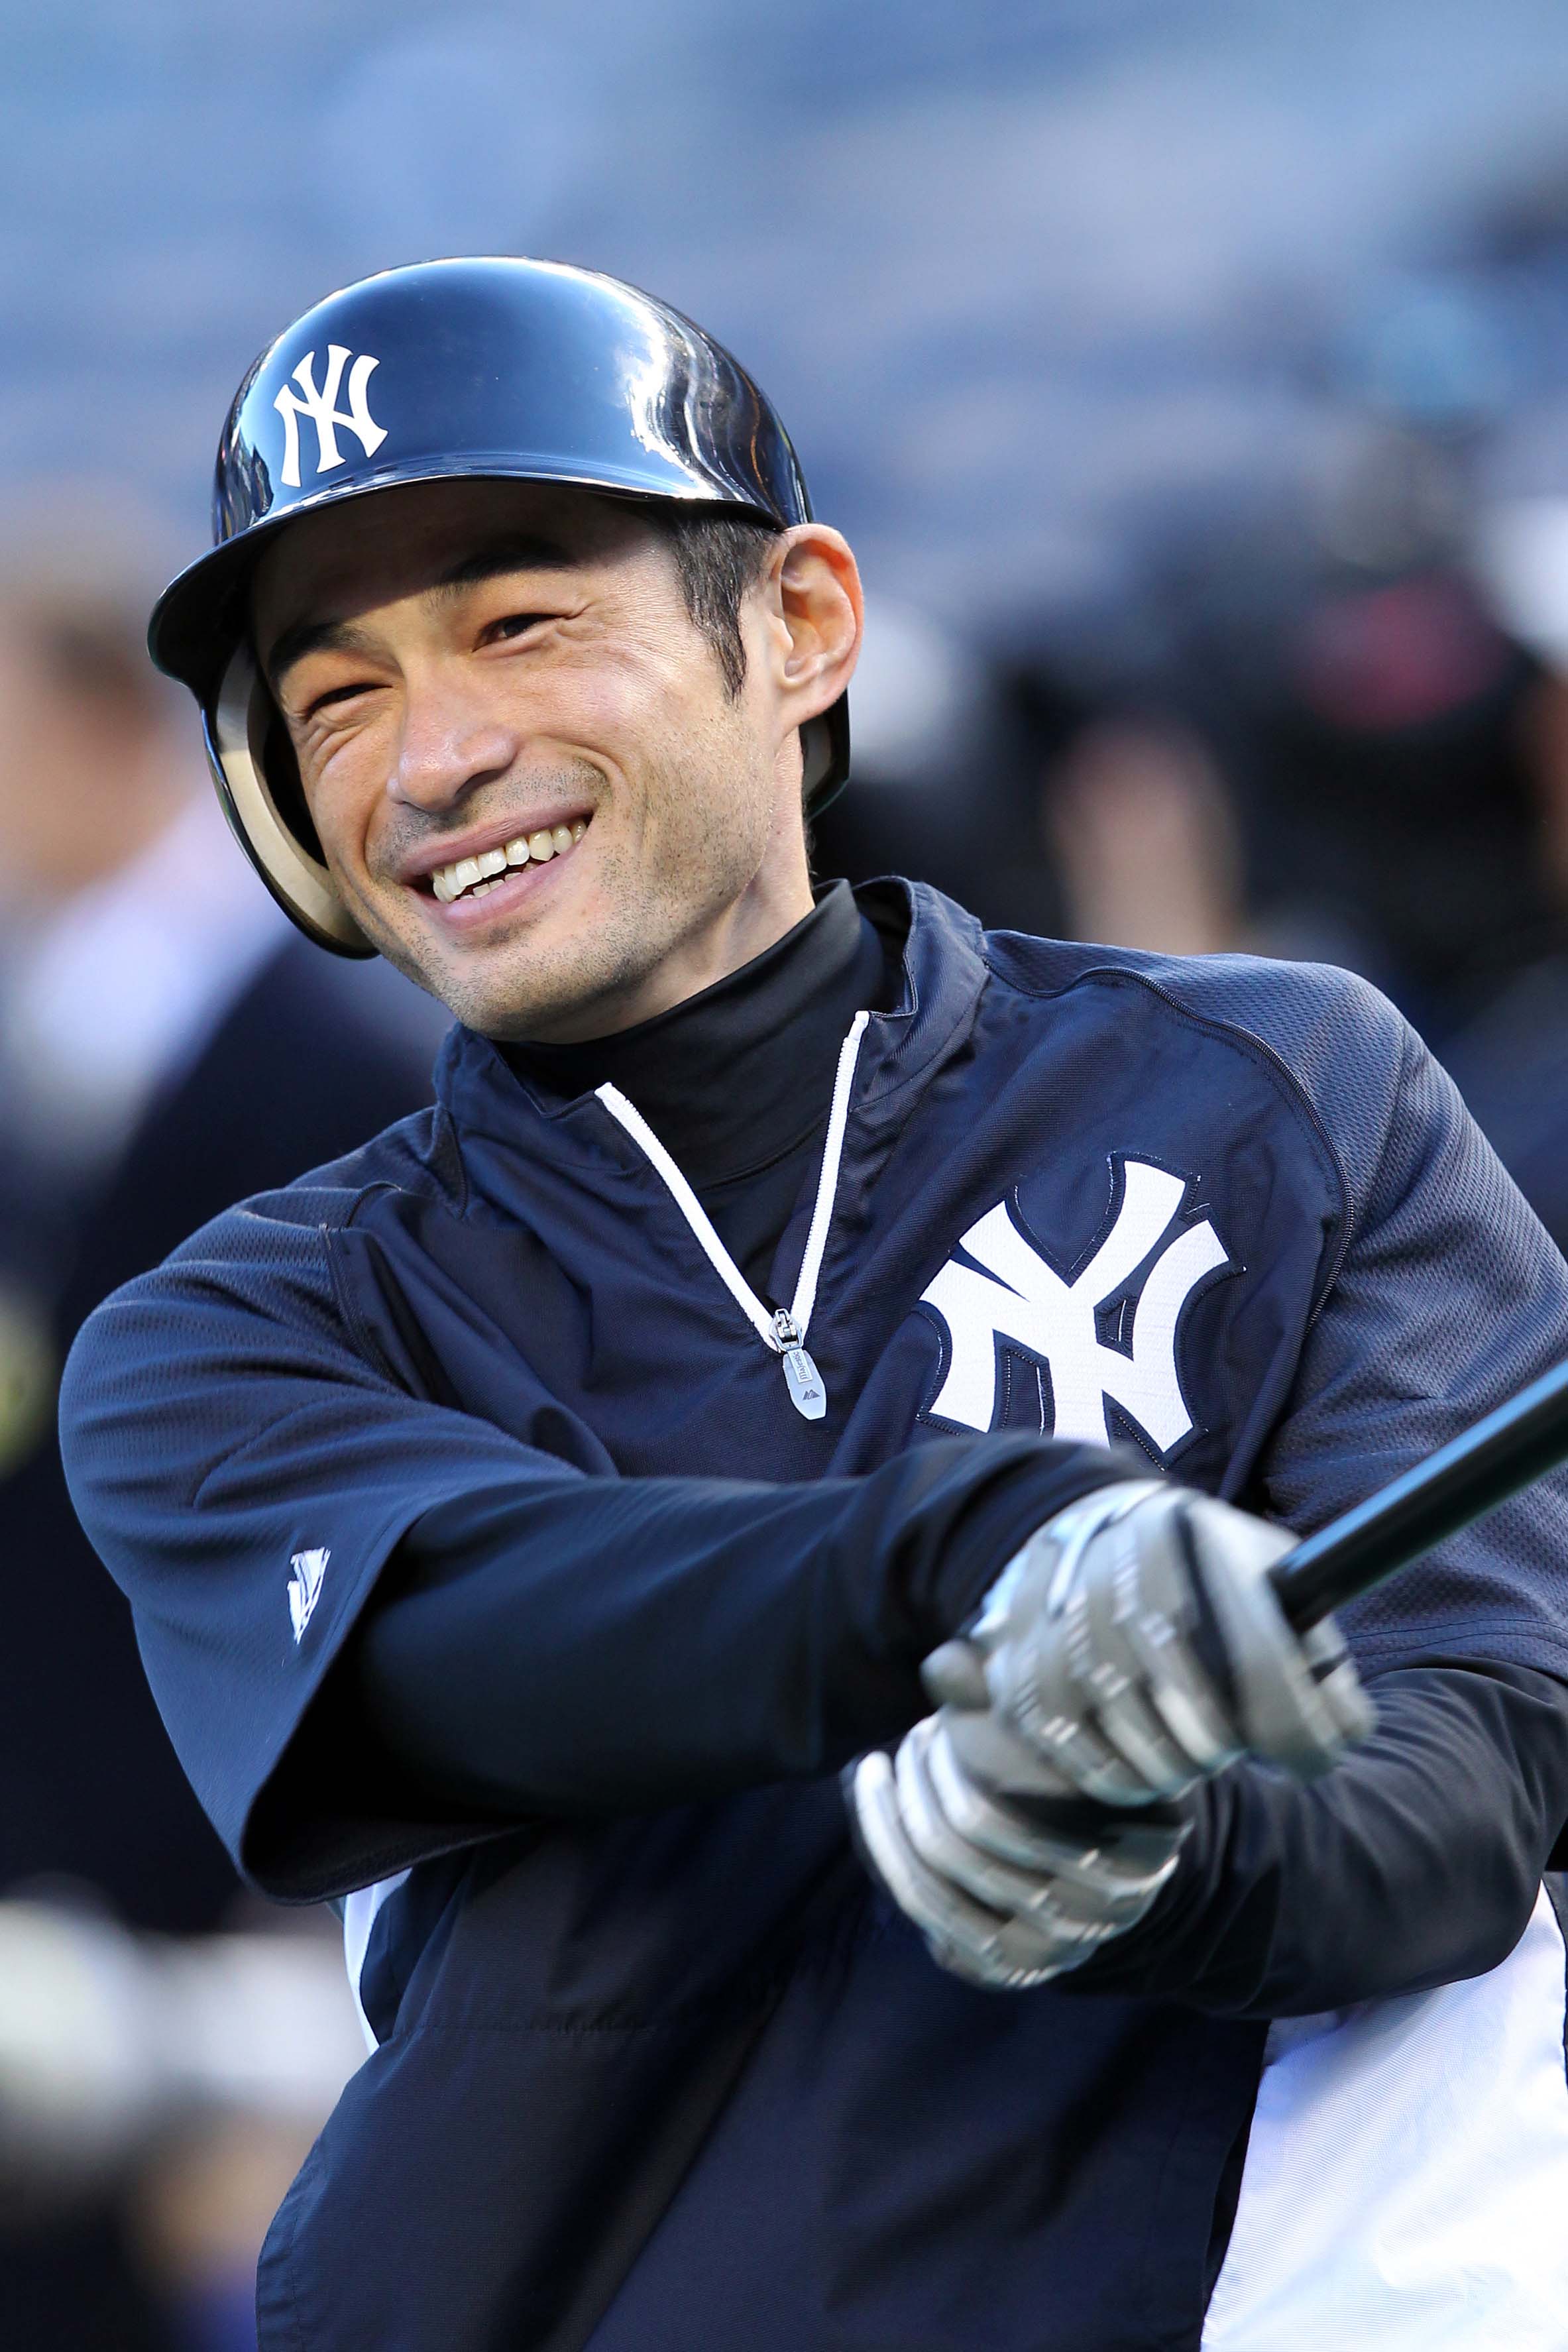 Ichiro the Yankee: Mariners trade Suzuki to New York - NBC Sports